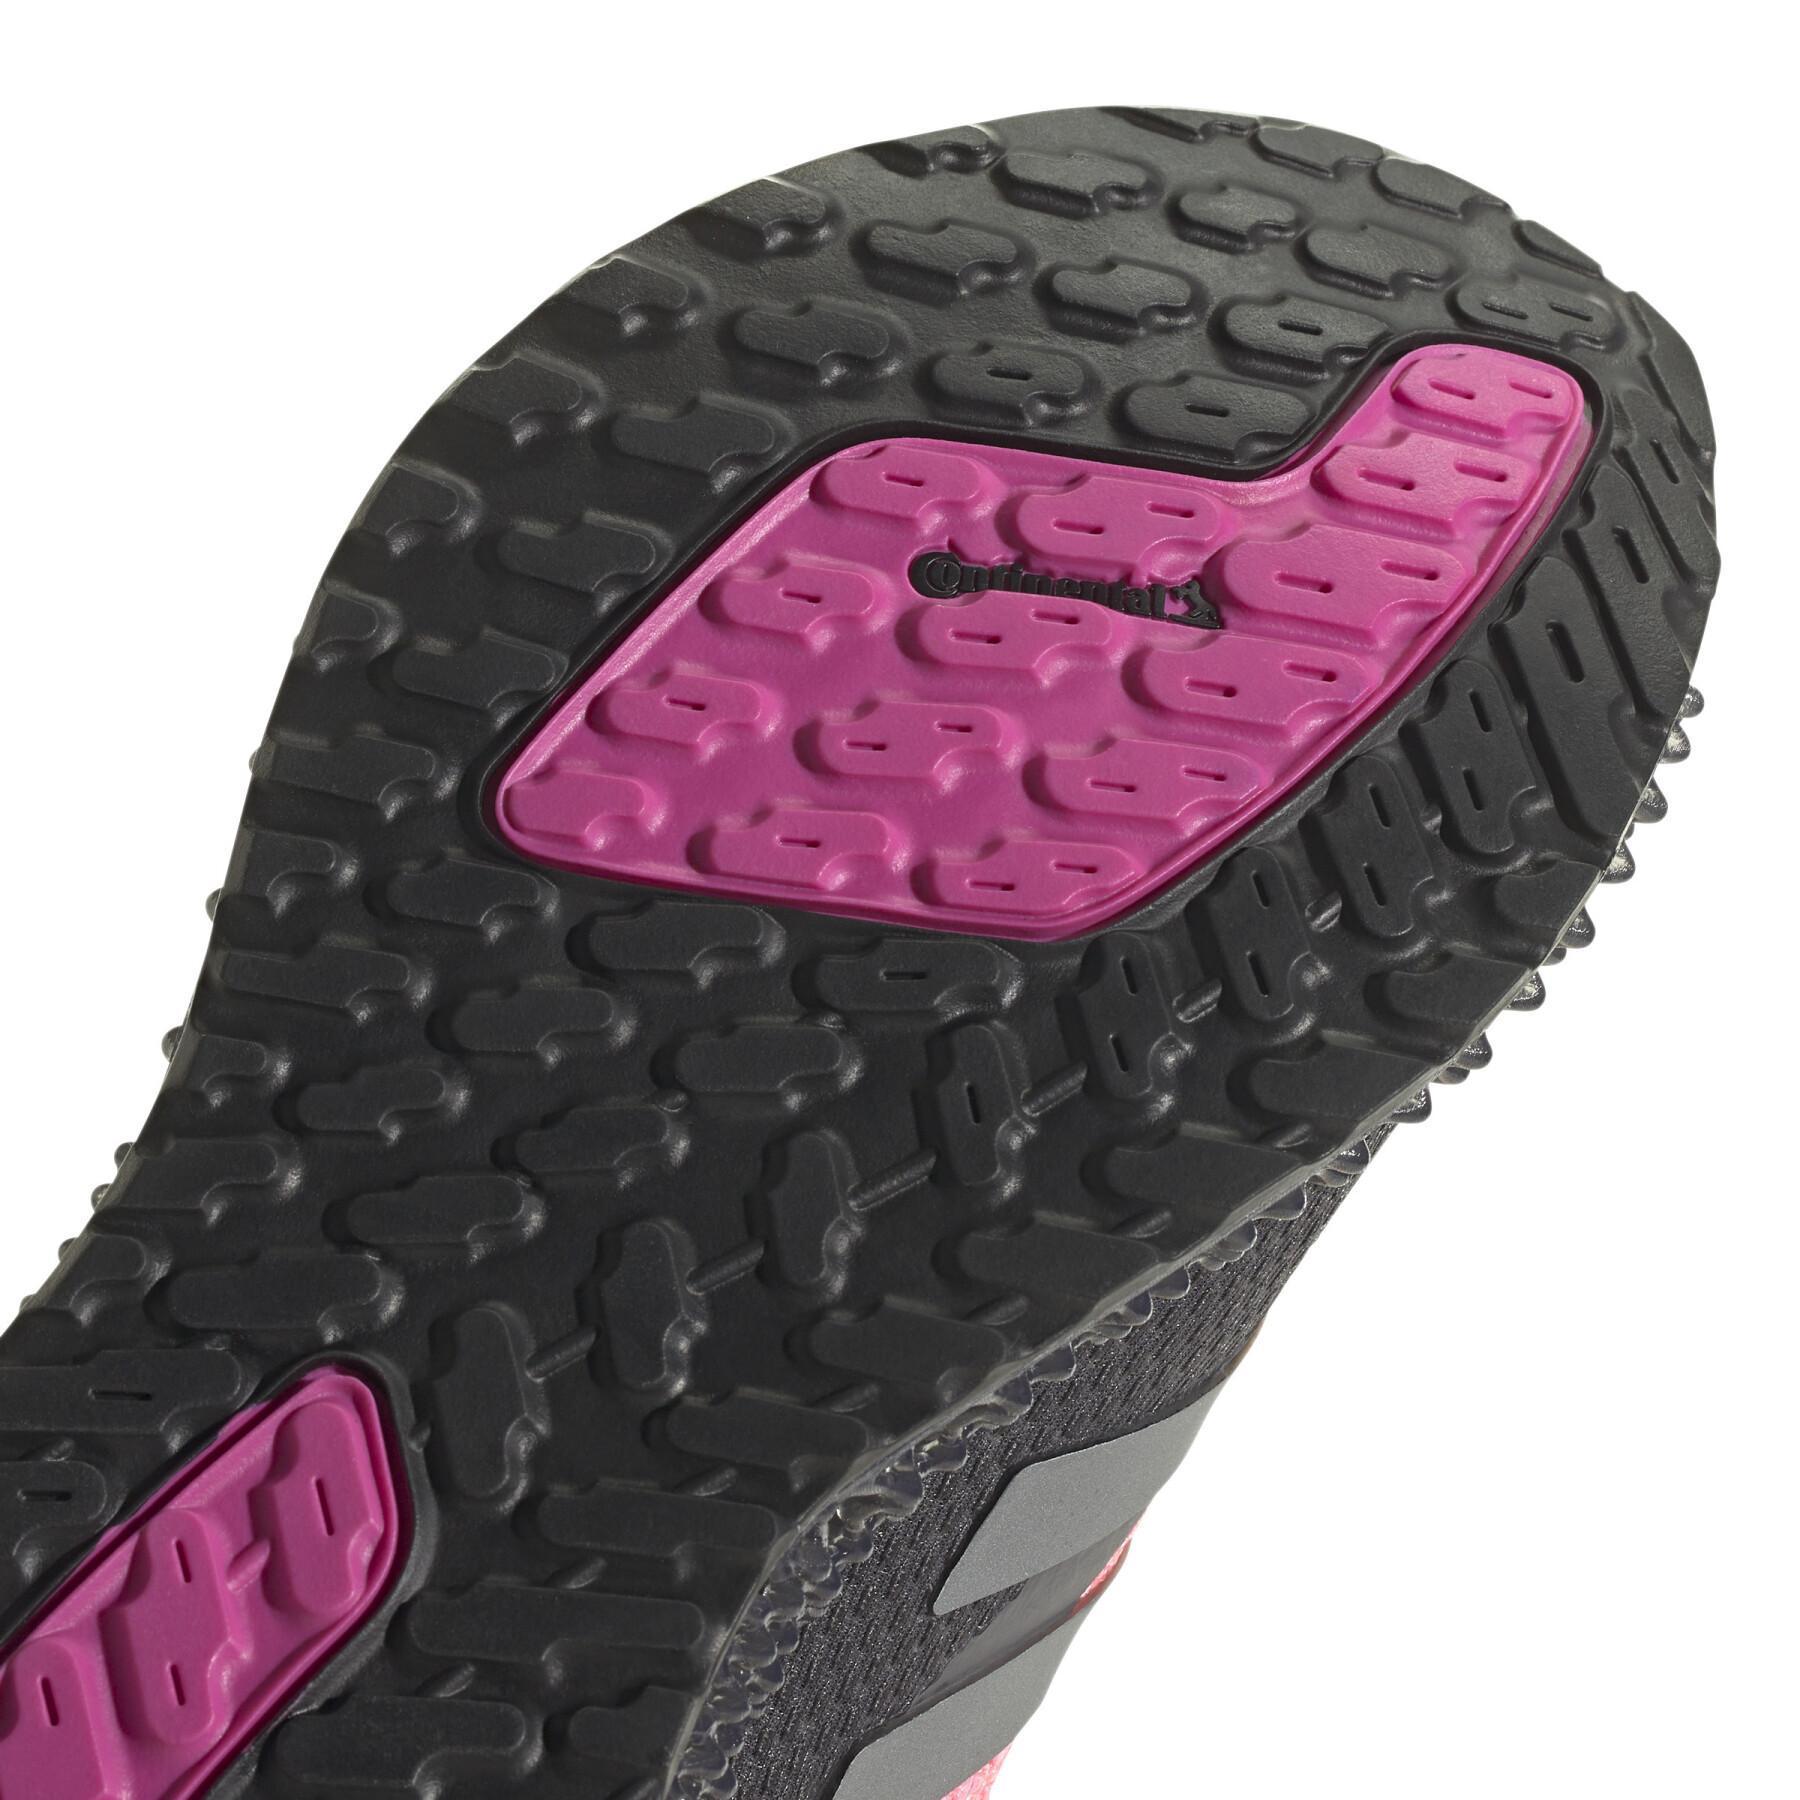 Zapatillas de deporte para mujer adidas 4D FWD